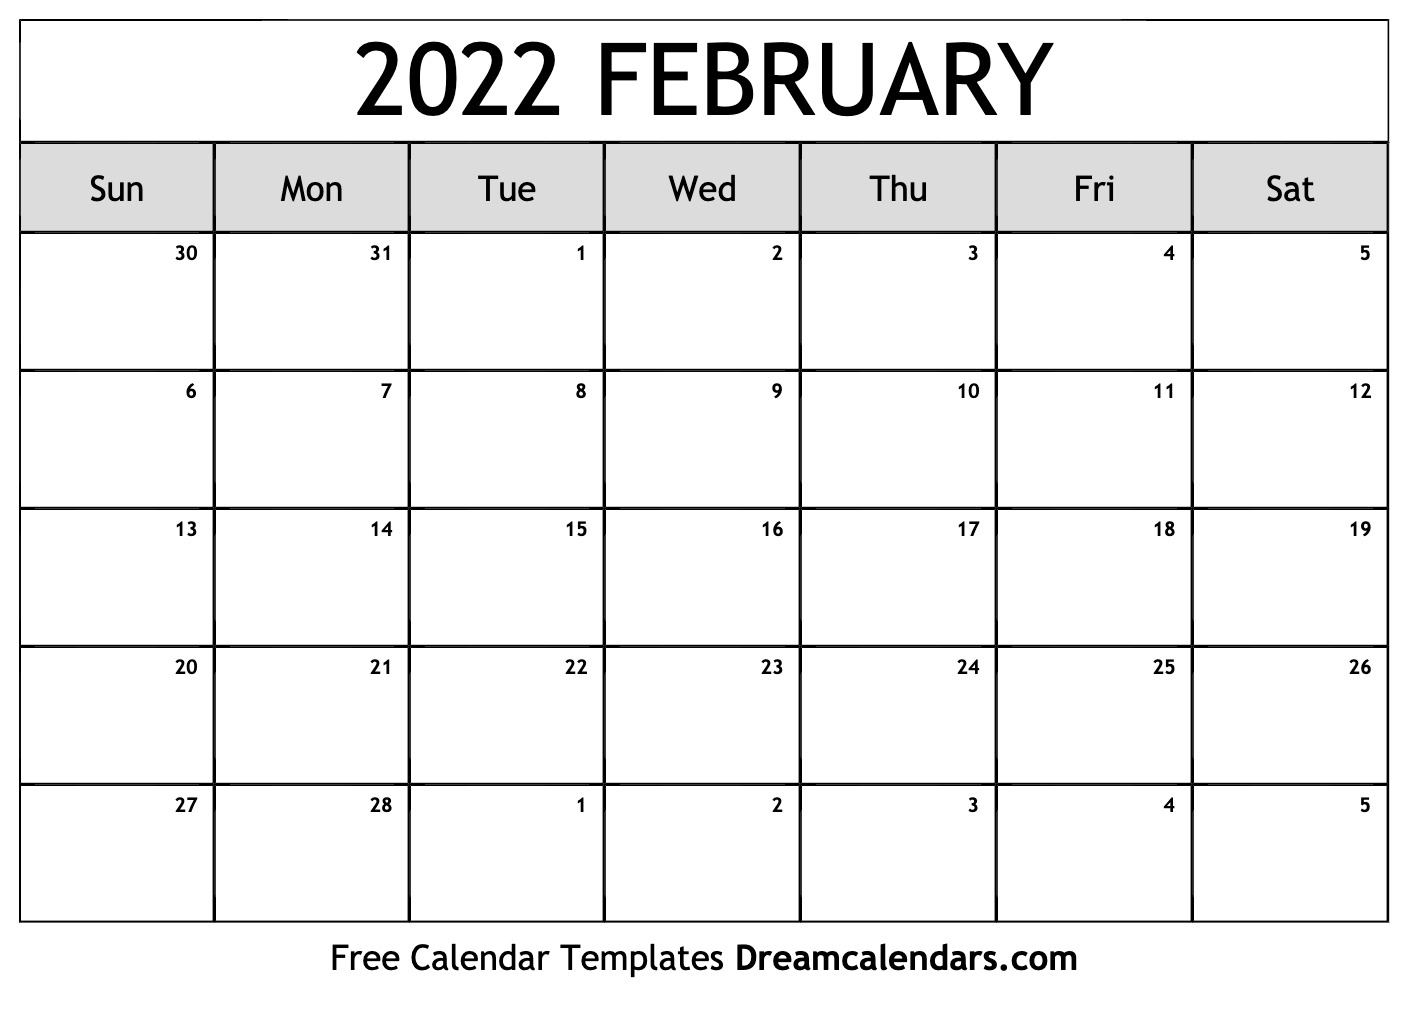 Get February Days 2022 Calendar